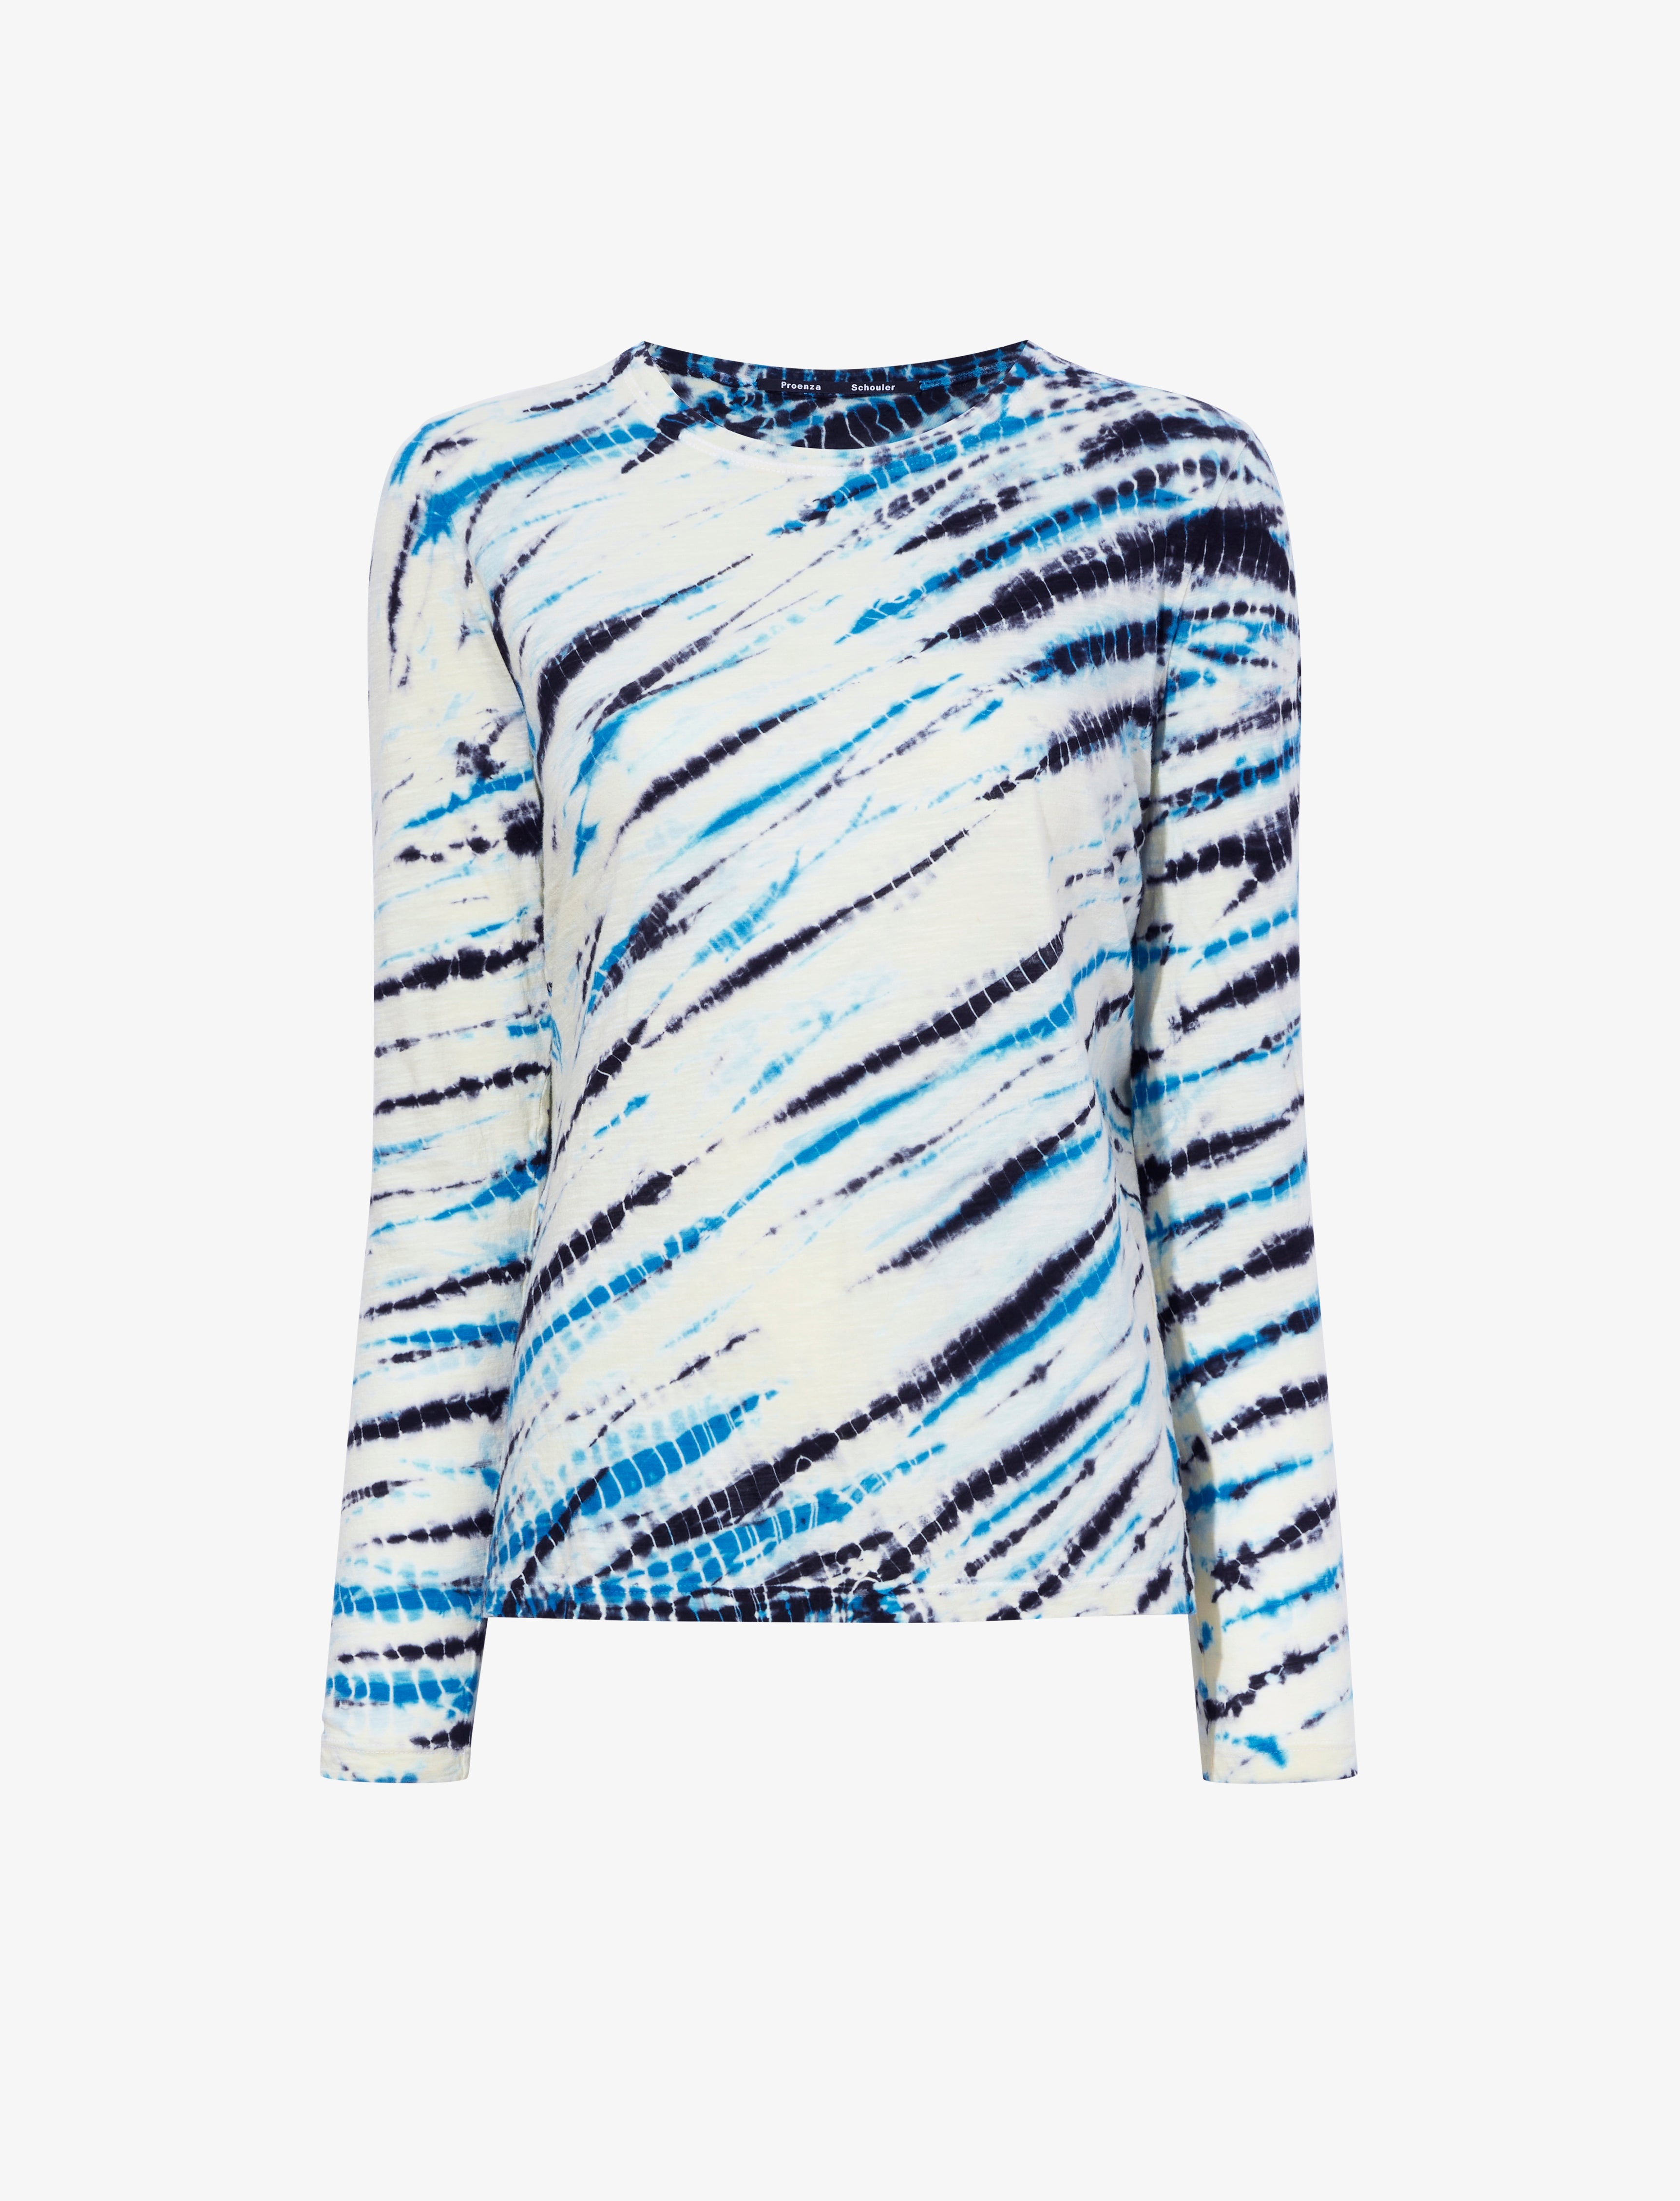 Mia T-Shirt in Tie Dye Tissue Jersey - 1